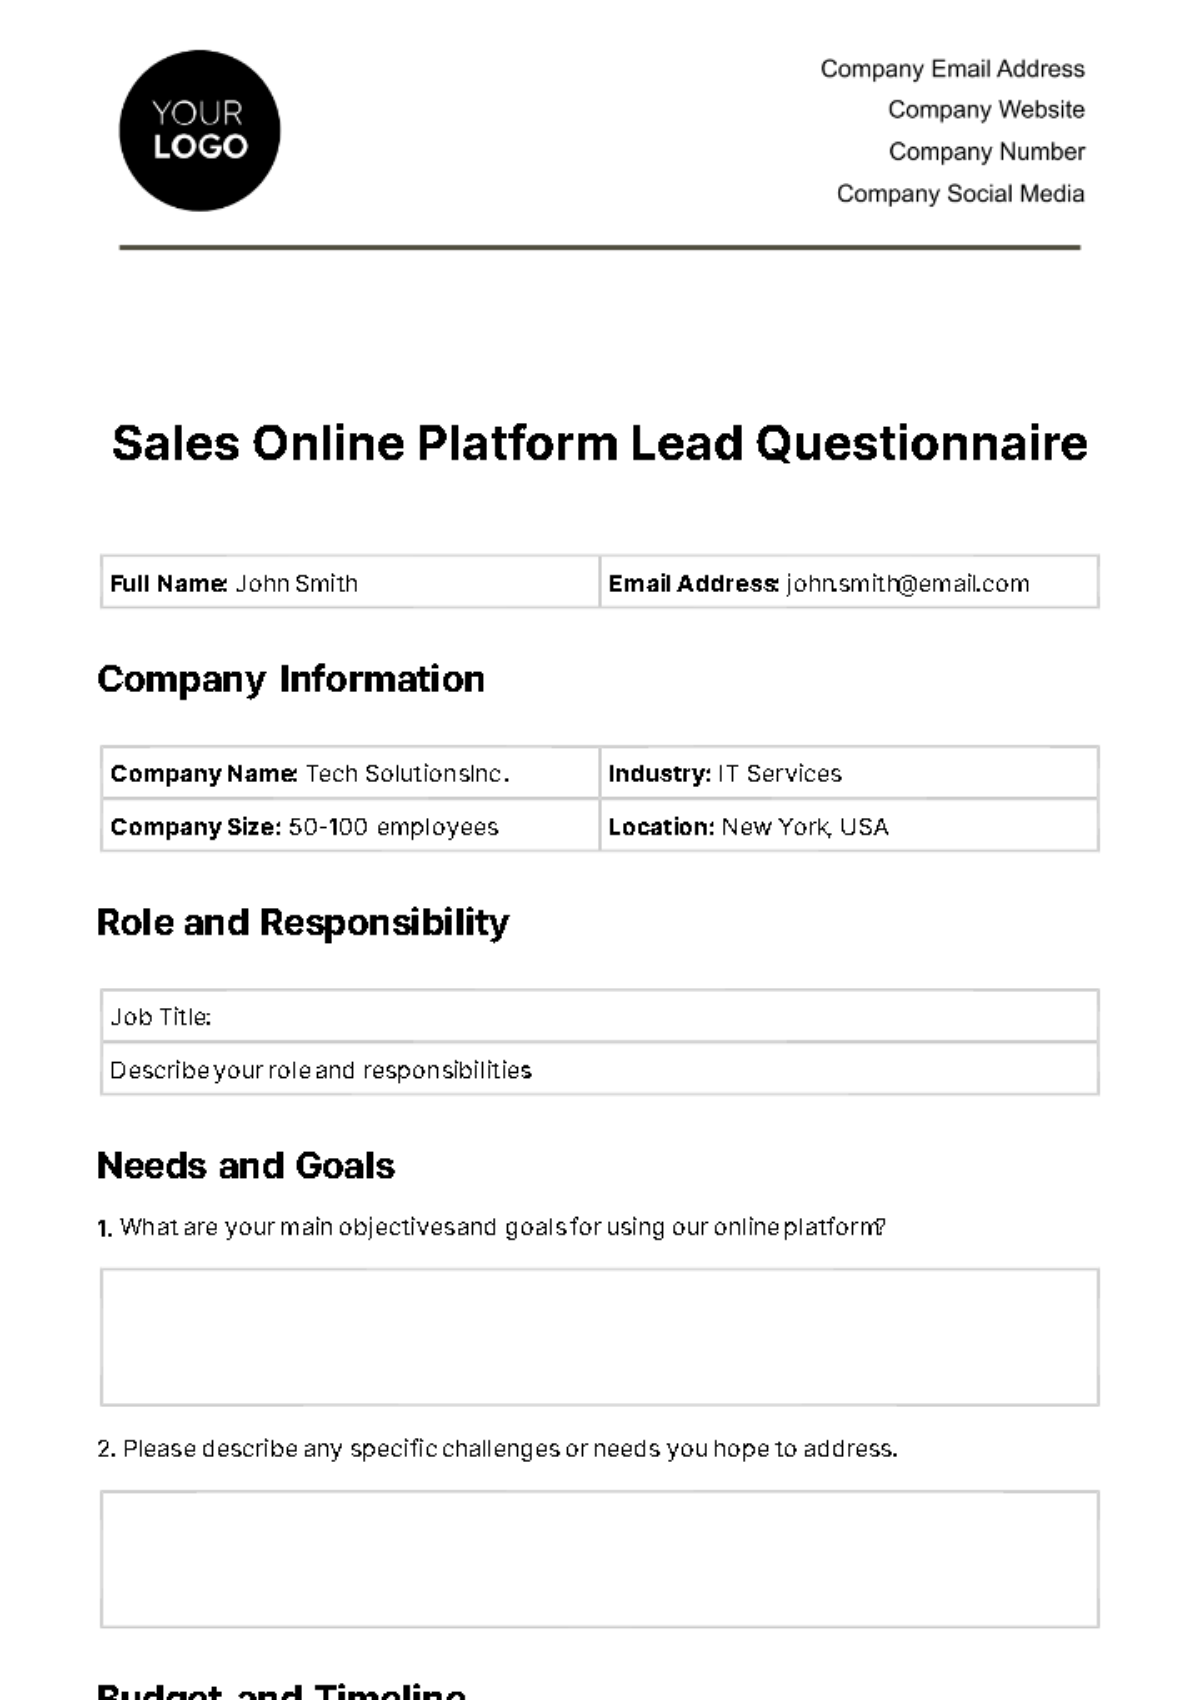 Free Sales Online Platform Lead Questionnaire Template